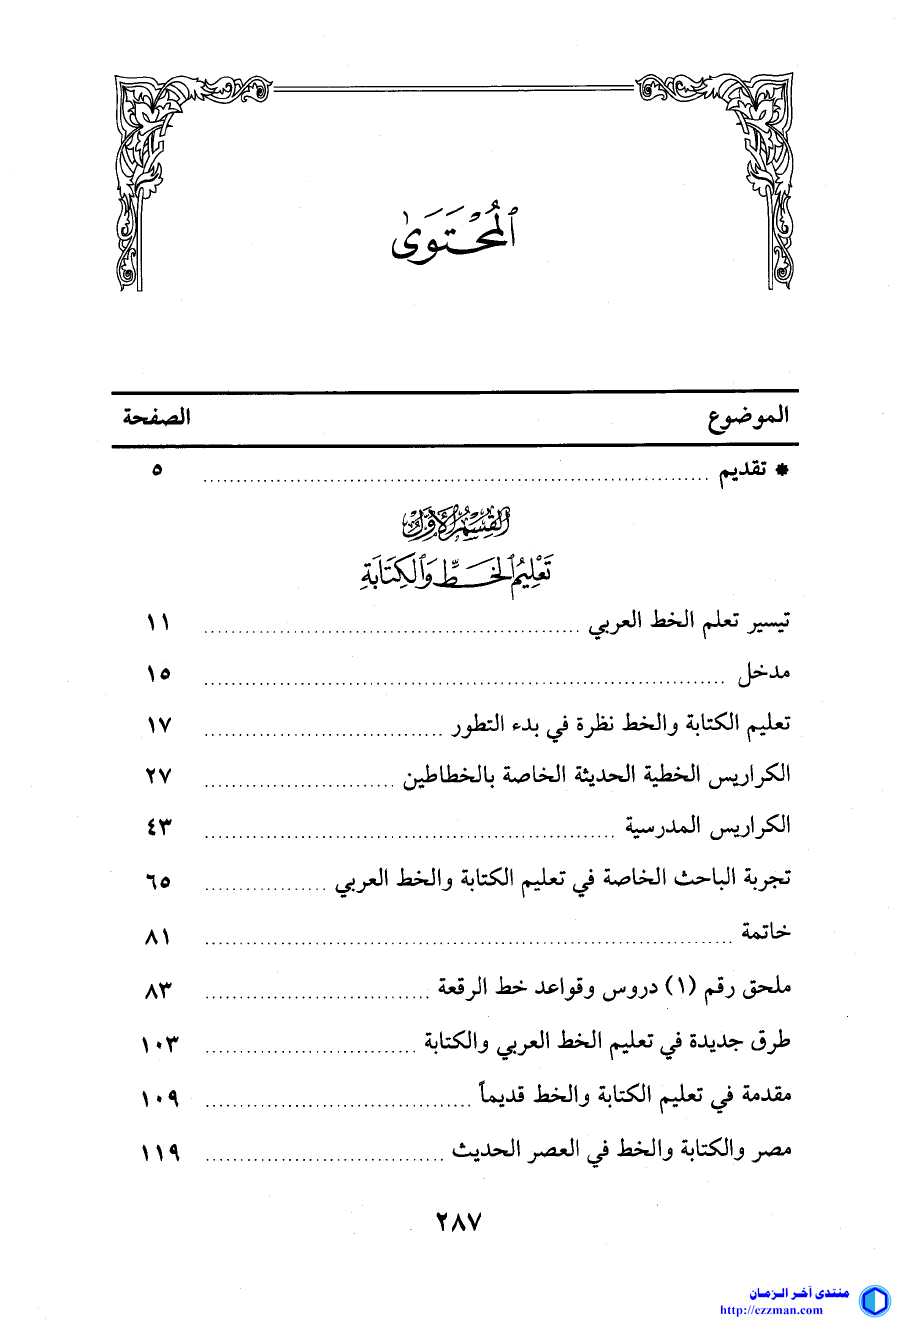 تعليم الخط العربي والكتابة تاريخا